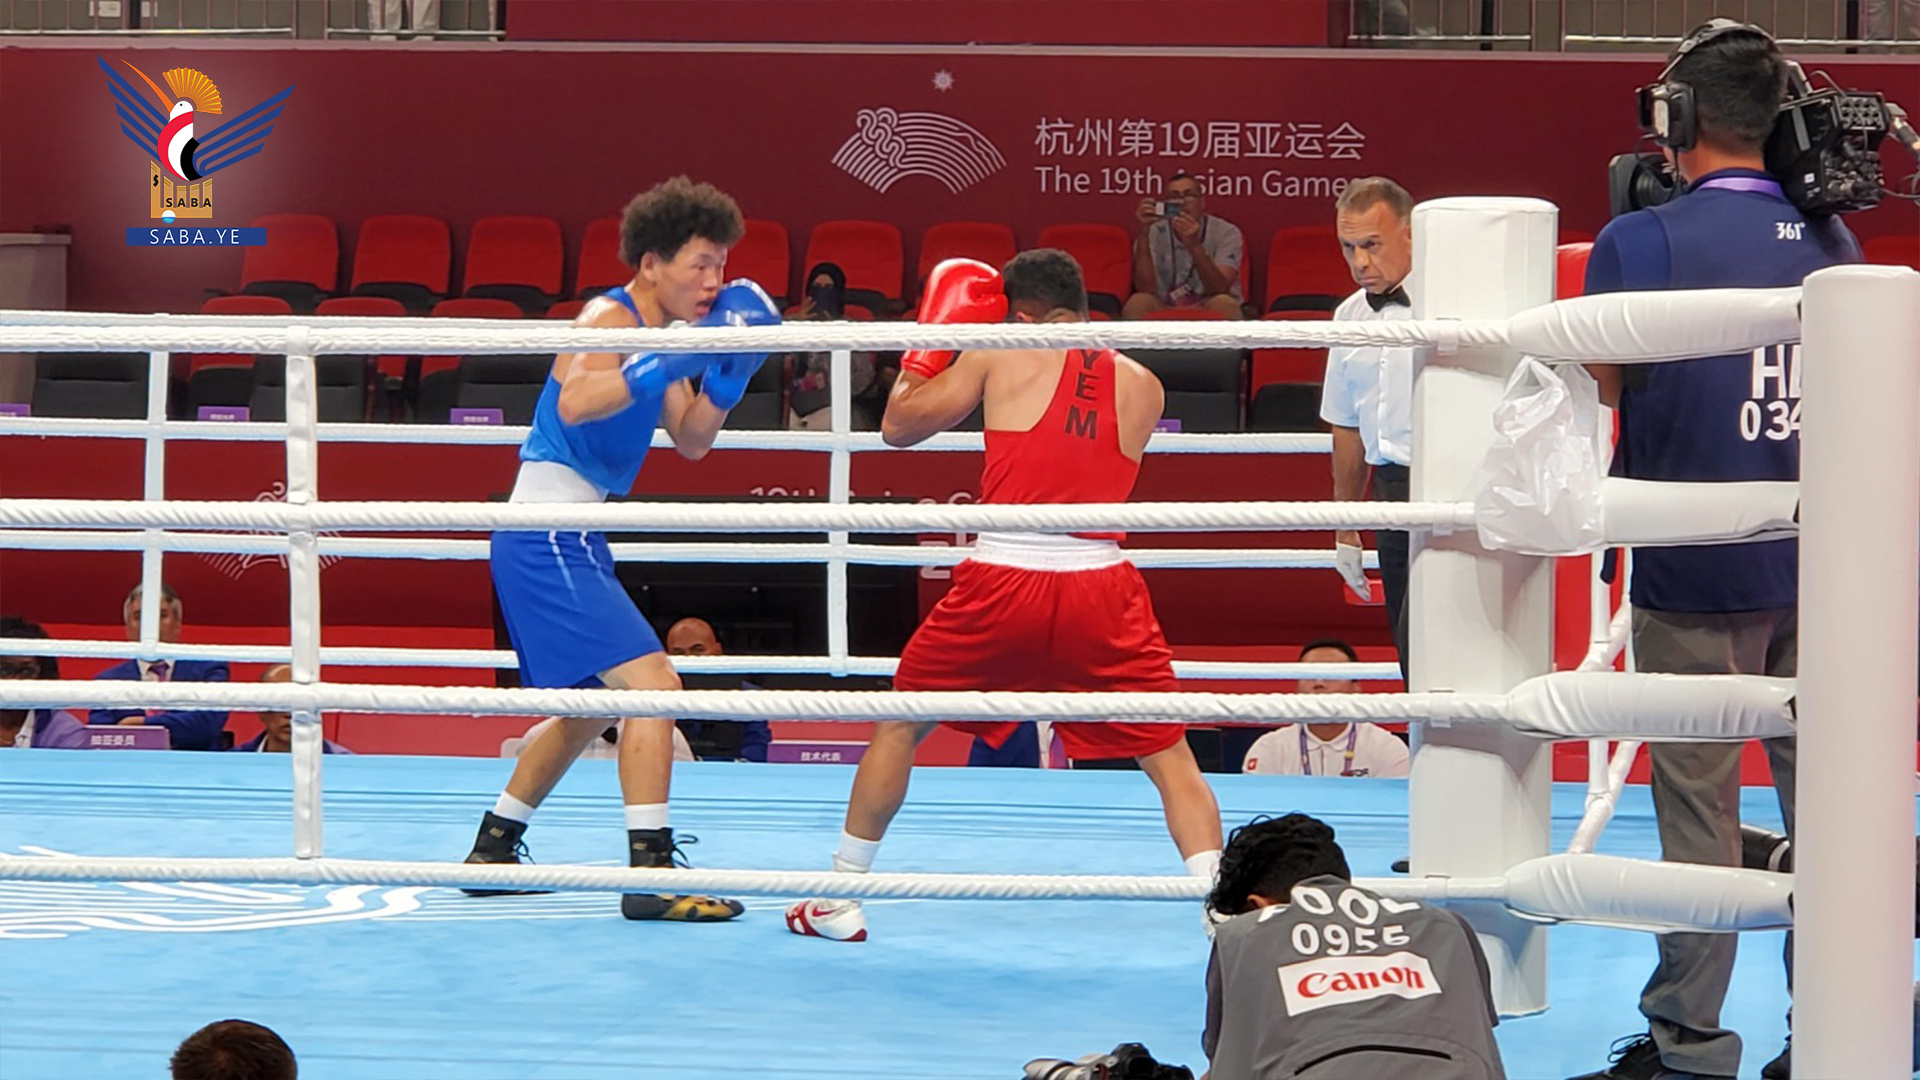 الملاكم اليمني القرناص يخسر بصعوبة من منافسه المنغولي في دورة الألعاب الآسيوية